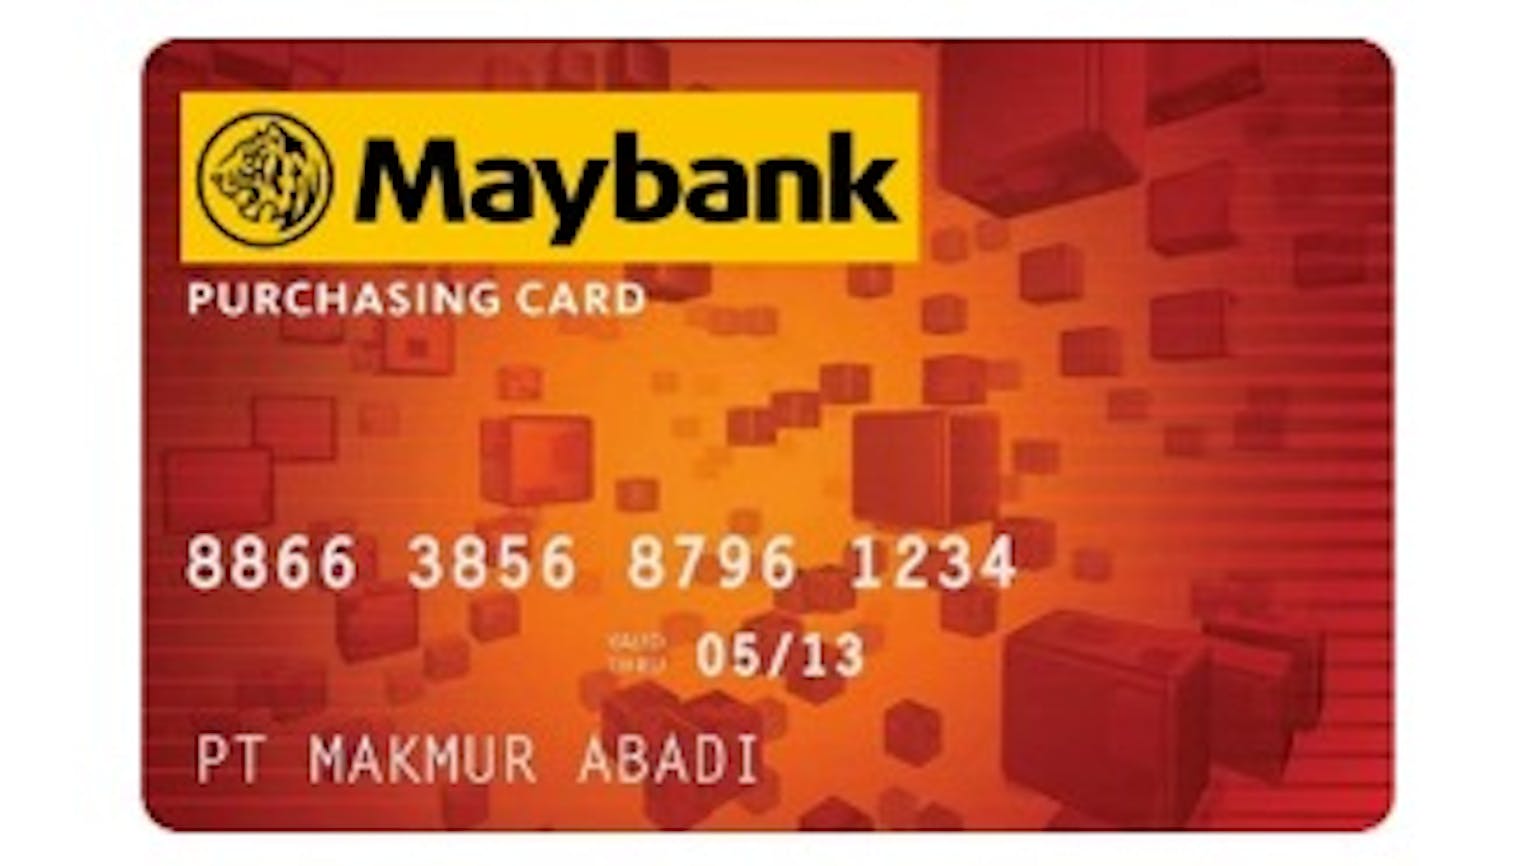 Maybank Purchasing